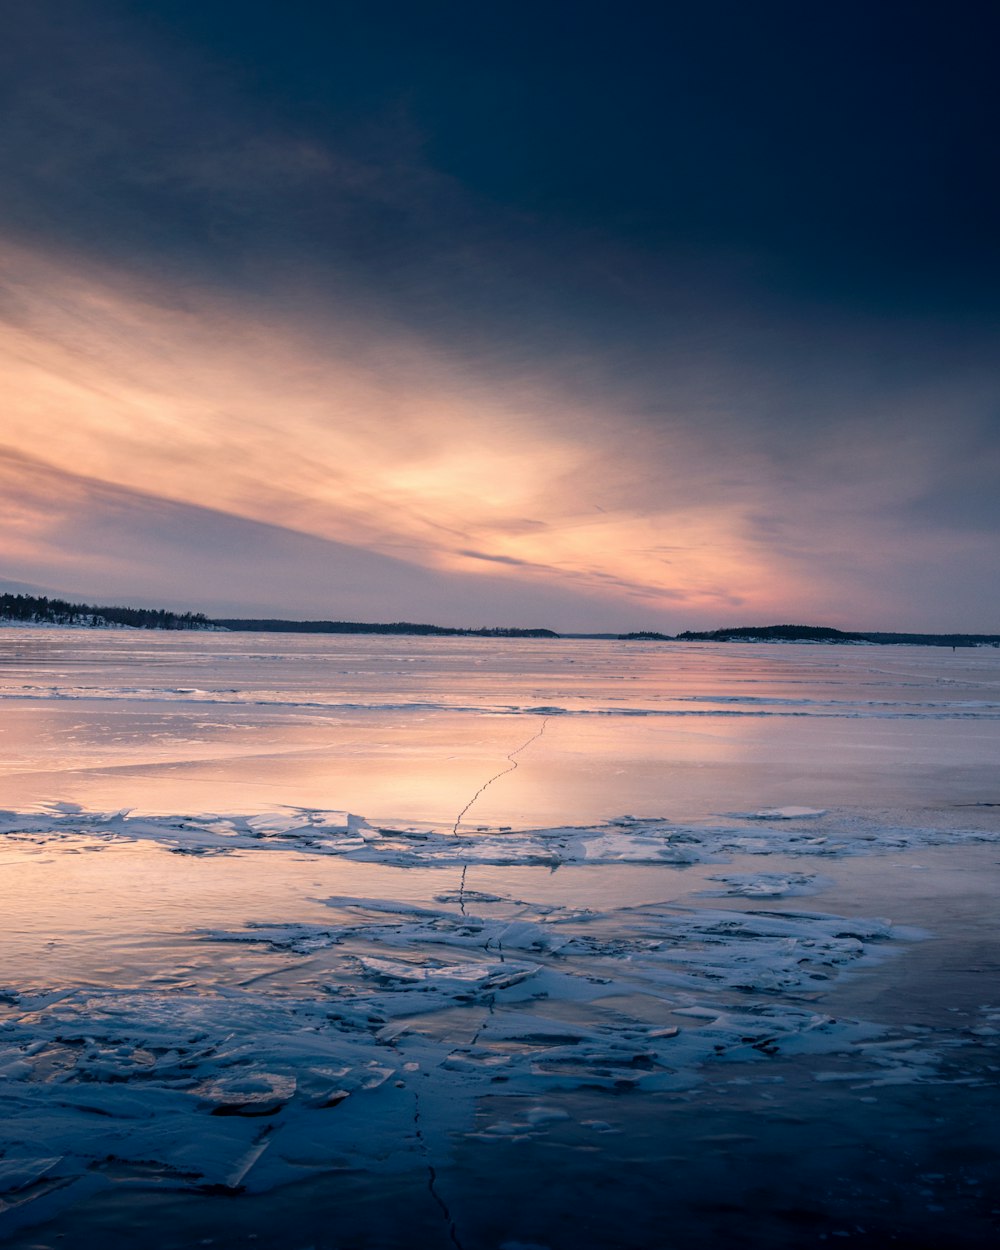 Um homem pescando em um lago congelado ao pôr do sol